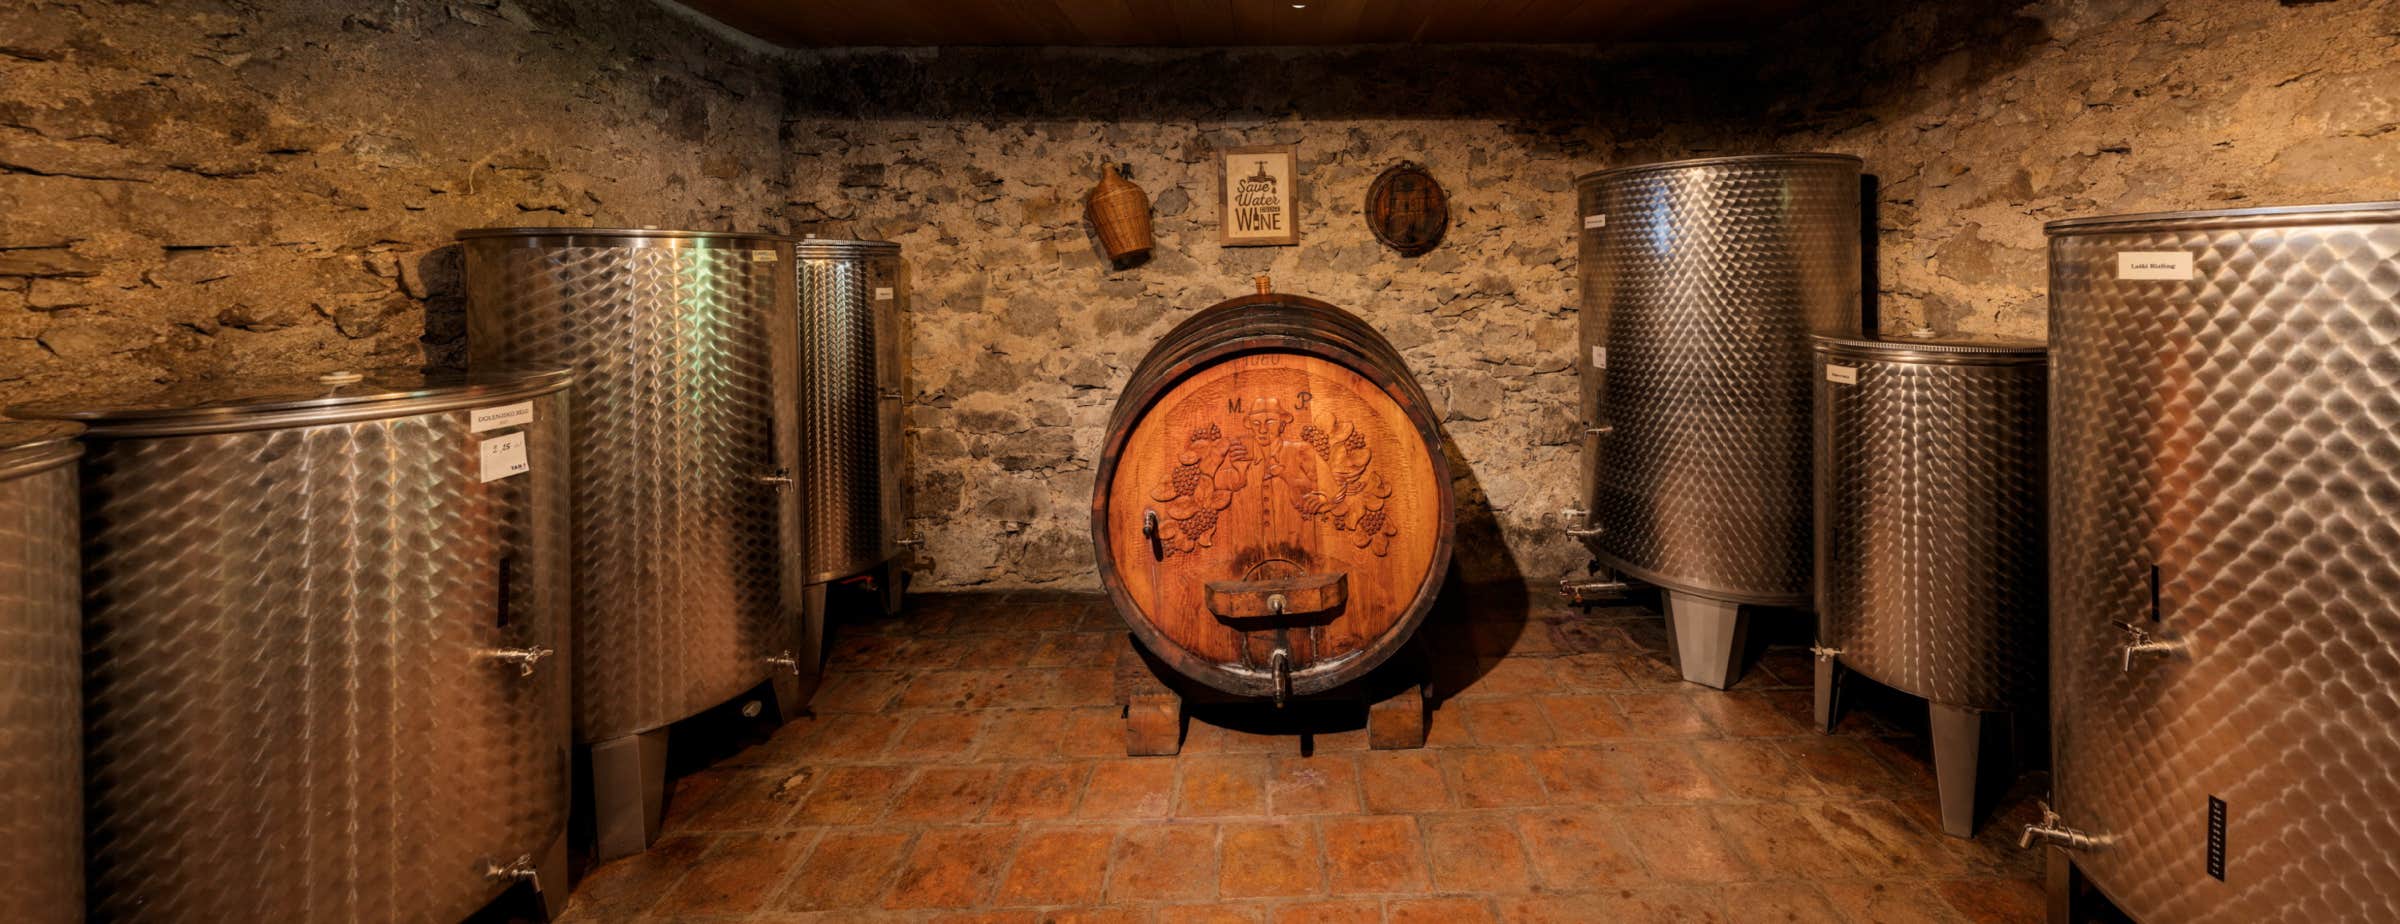 Εικόνα ενός κελαριού κρασιού που δείχνει ένα μεγάλο ξύλινο βαρέλι με γλυπτά ενός άνδρα και σταφύλια μπροστά από τον μπροστινό τοίχο στο κέντρο της εικόνας. Στον δεξιό και αριστερό πλευρικό τοίχο είναι τοποθετημένα πολλαπλά μεταλλικά βαρέλια. 